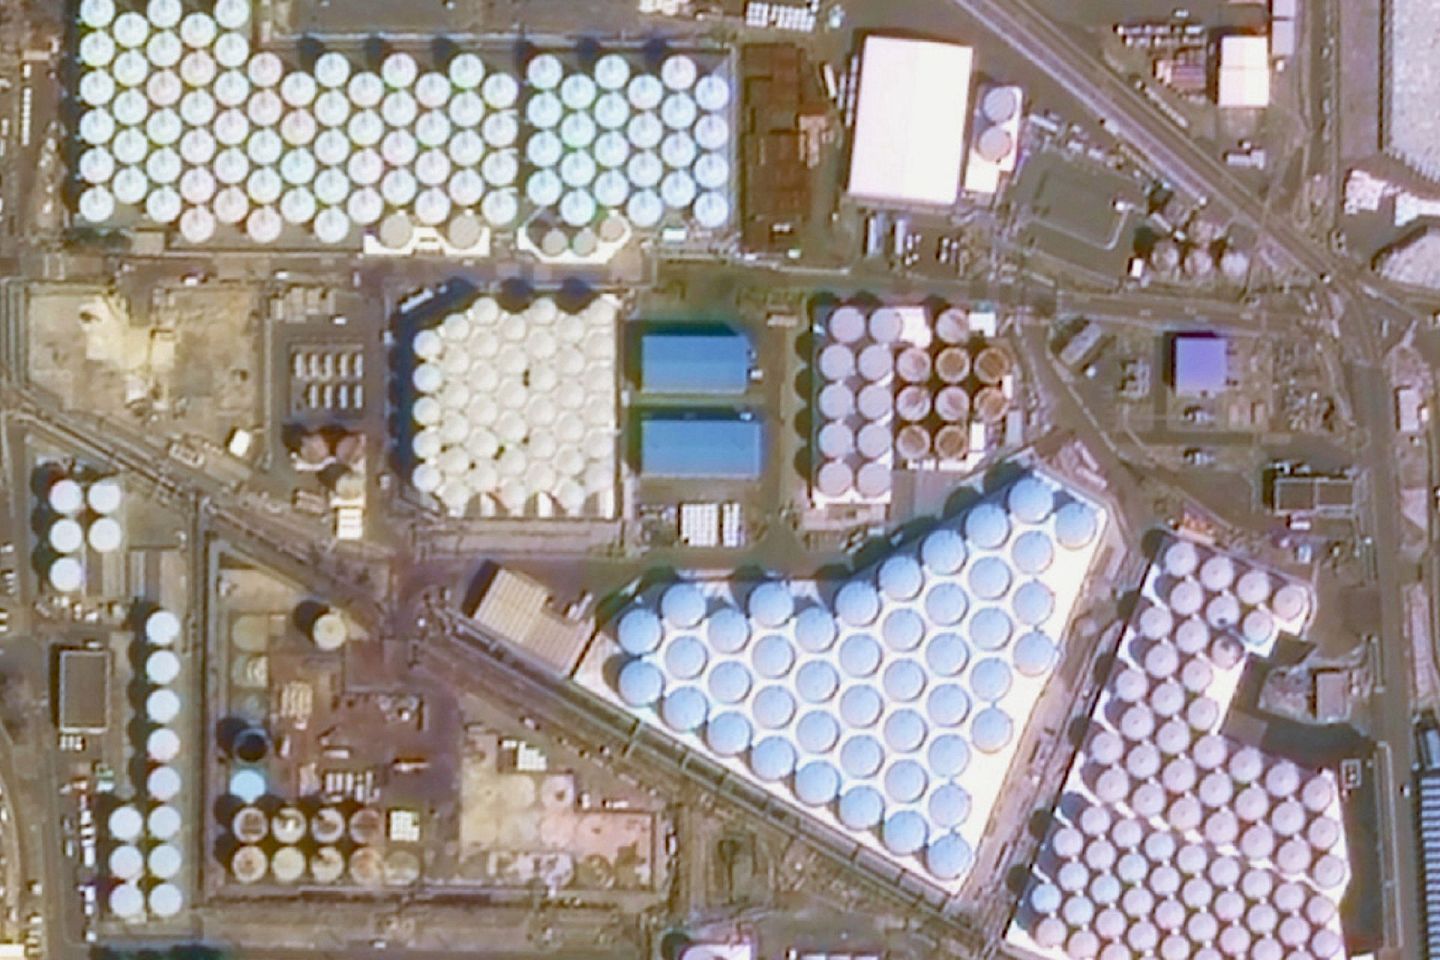 中国卫星企业拍摄福岛核电站核废水储存区。图为福岛核电站附近的核废水储存区。（微博＠长光卫星）